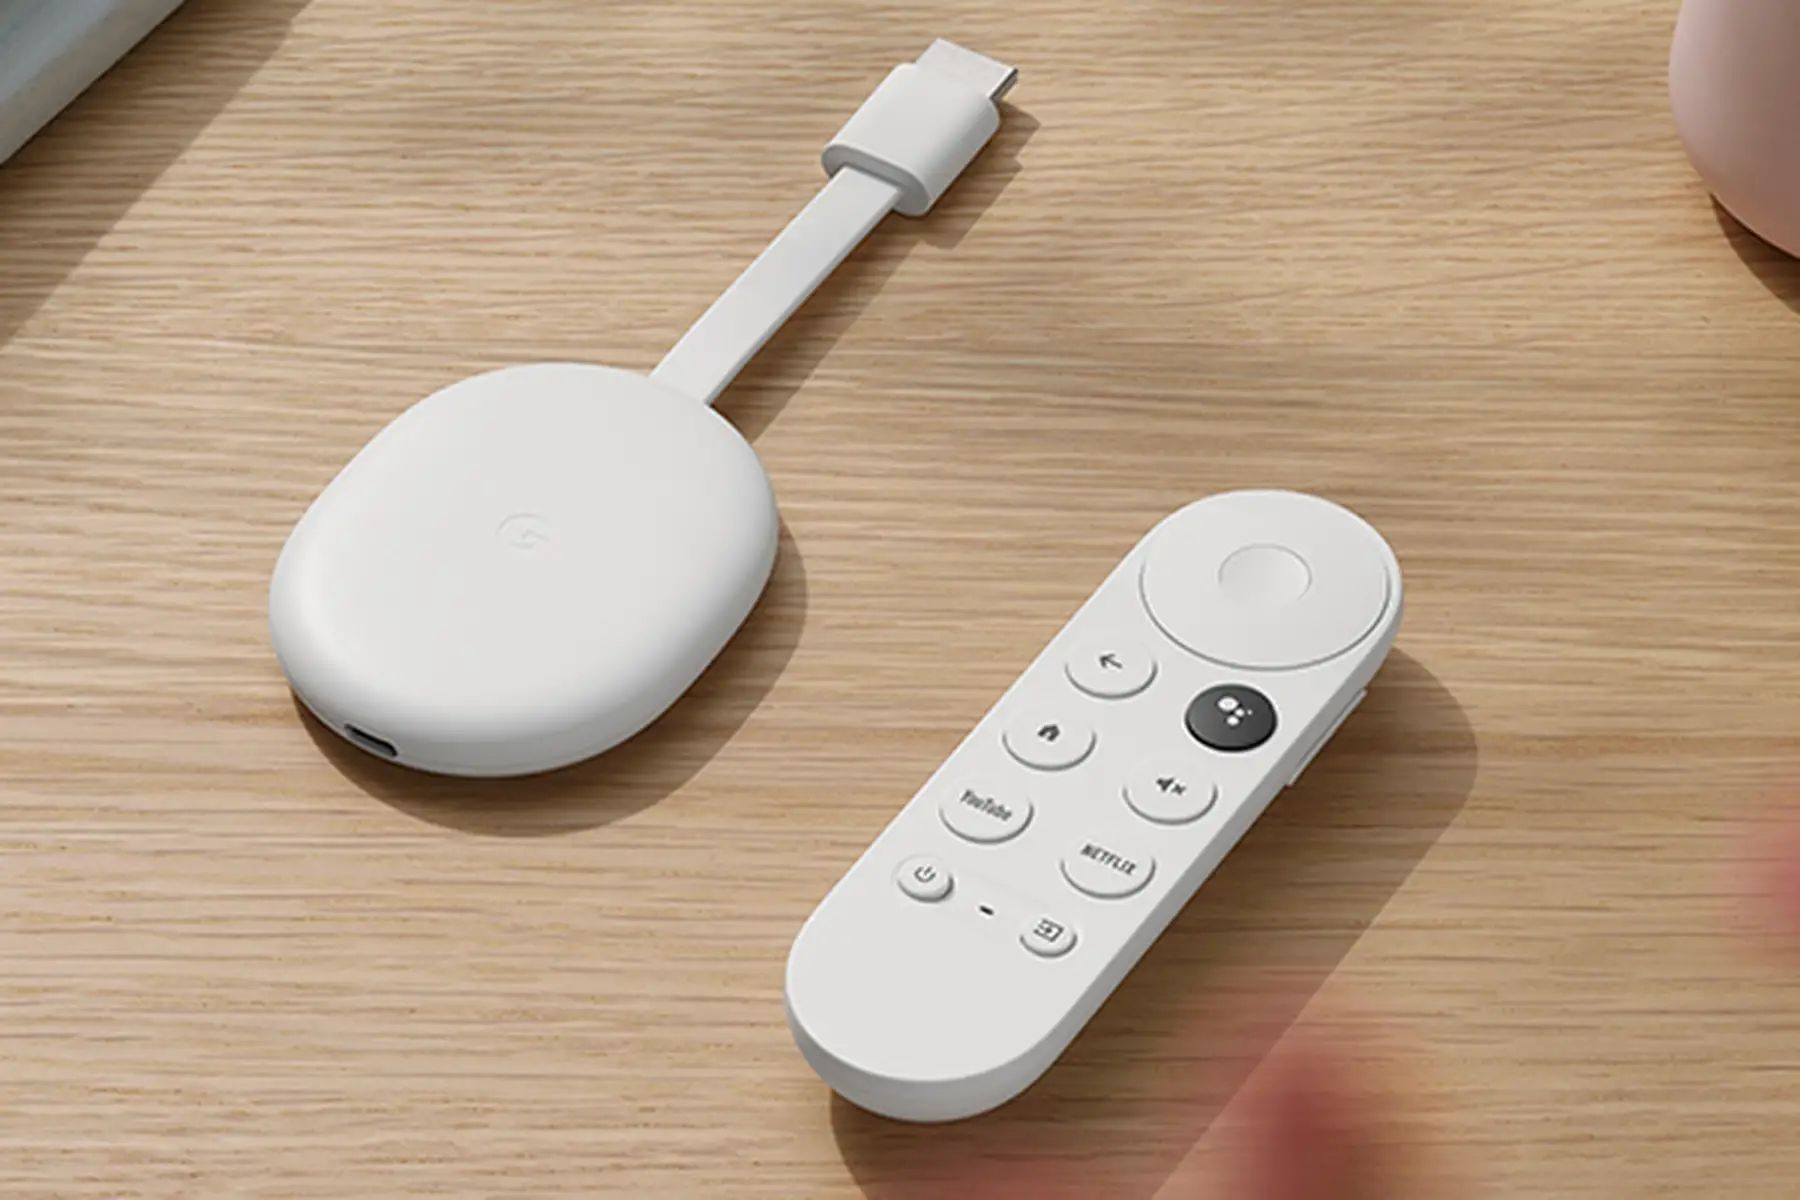 Chromecast con Google TV: todas sus características y precio